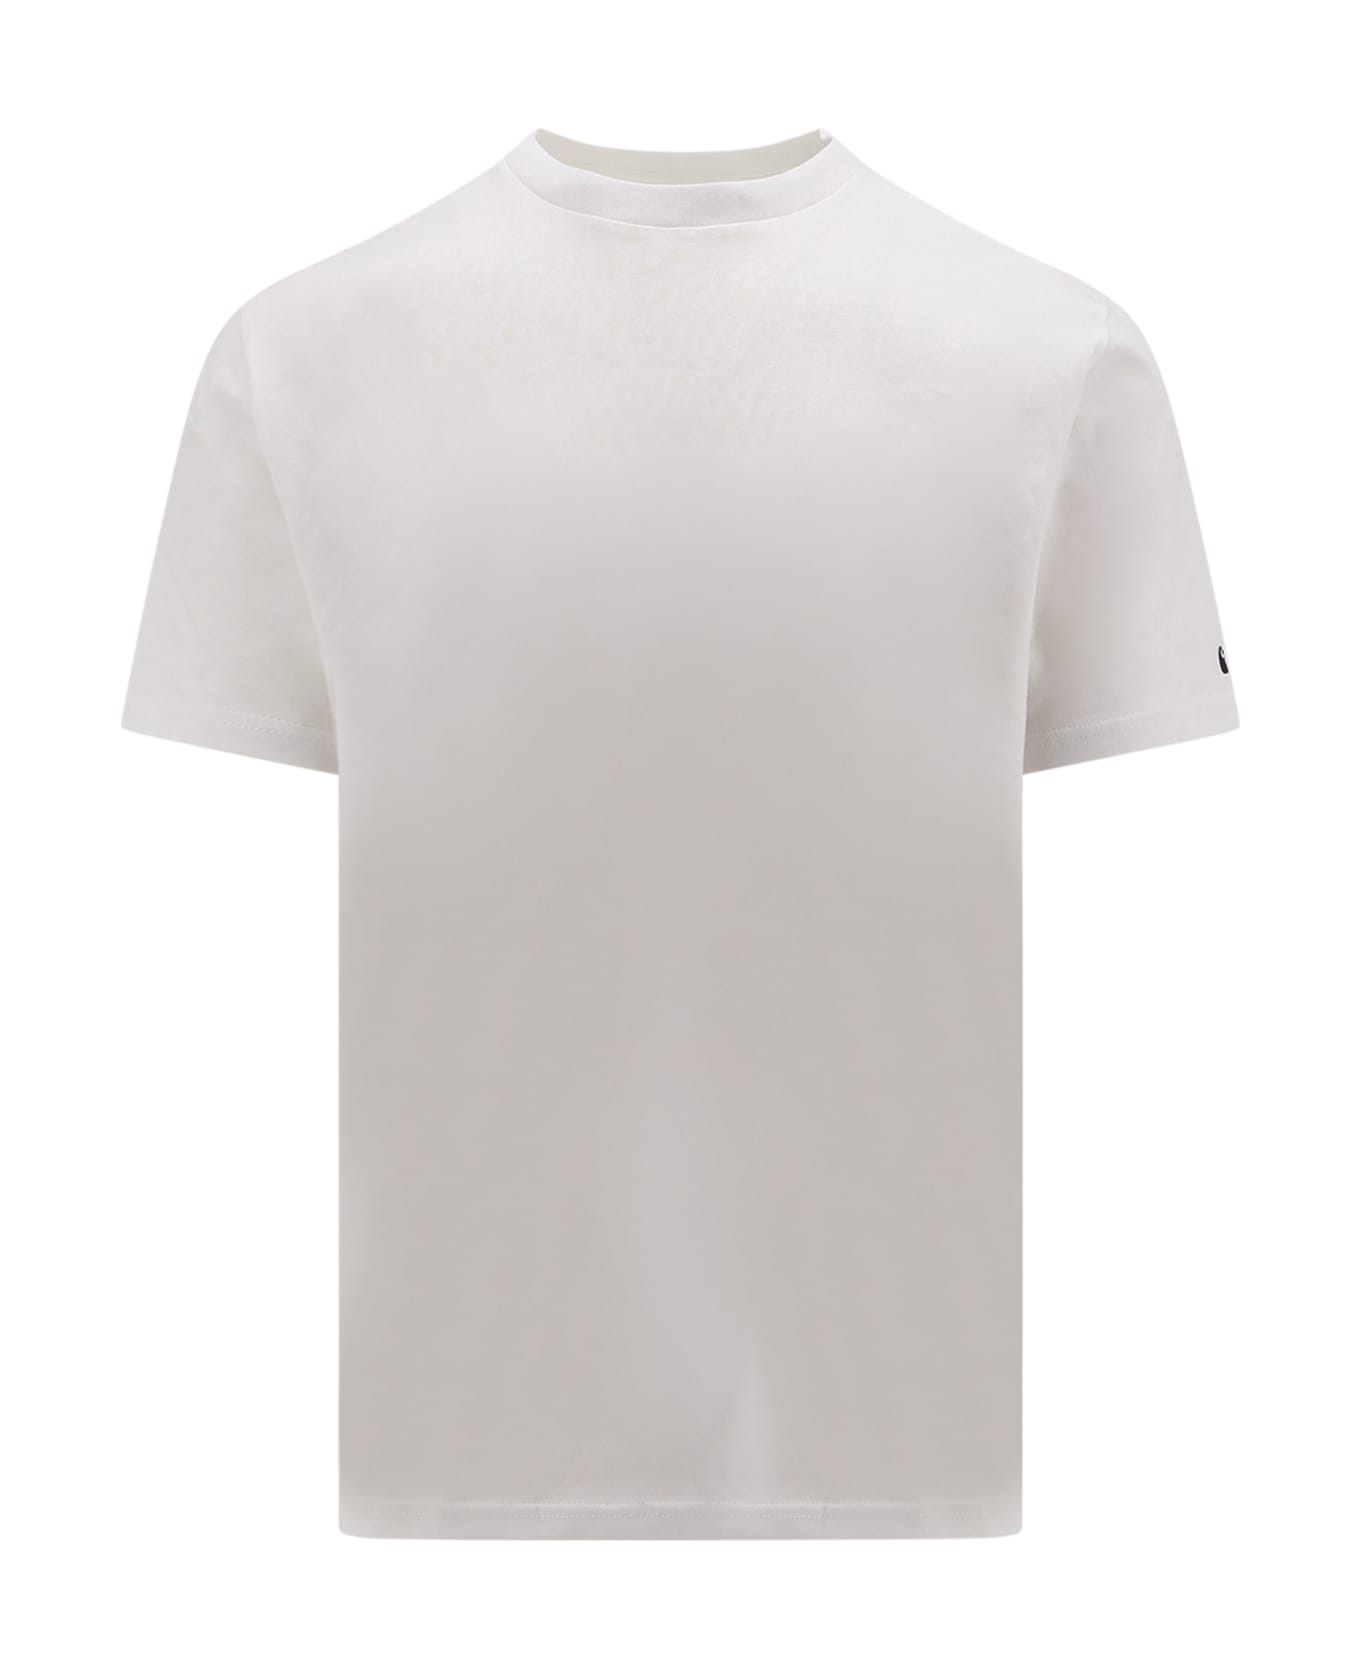 Carhartt T-shirt - White